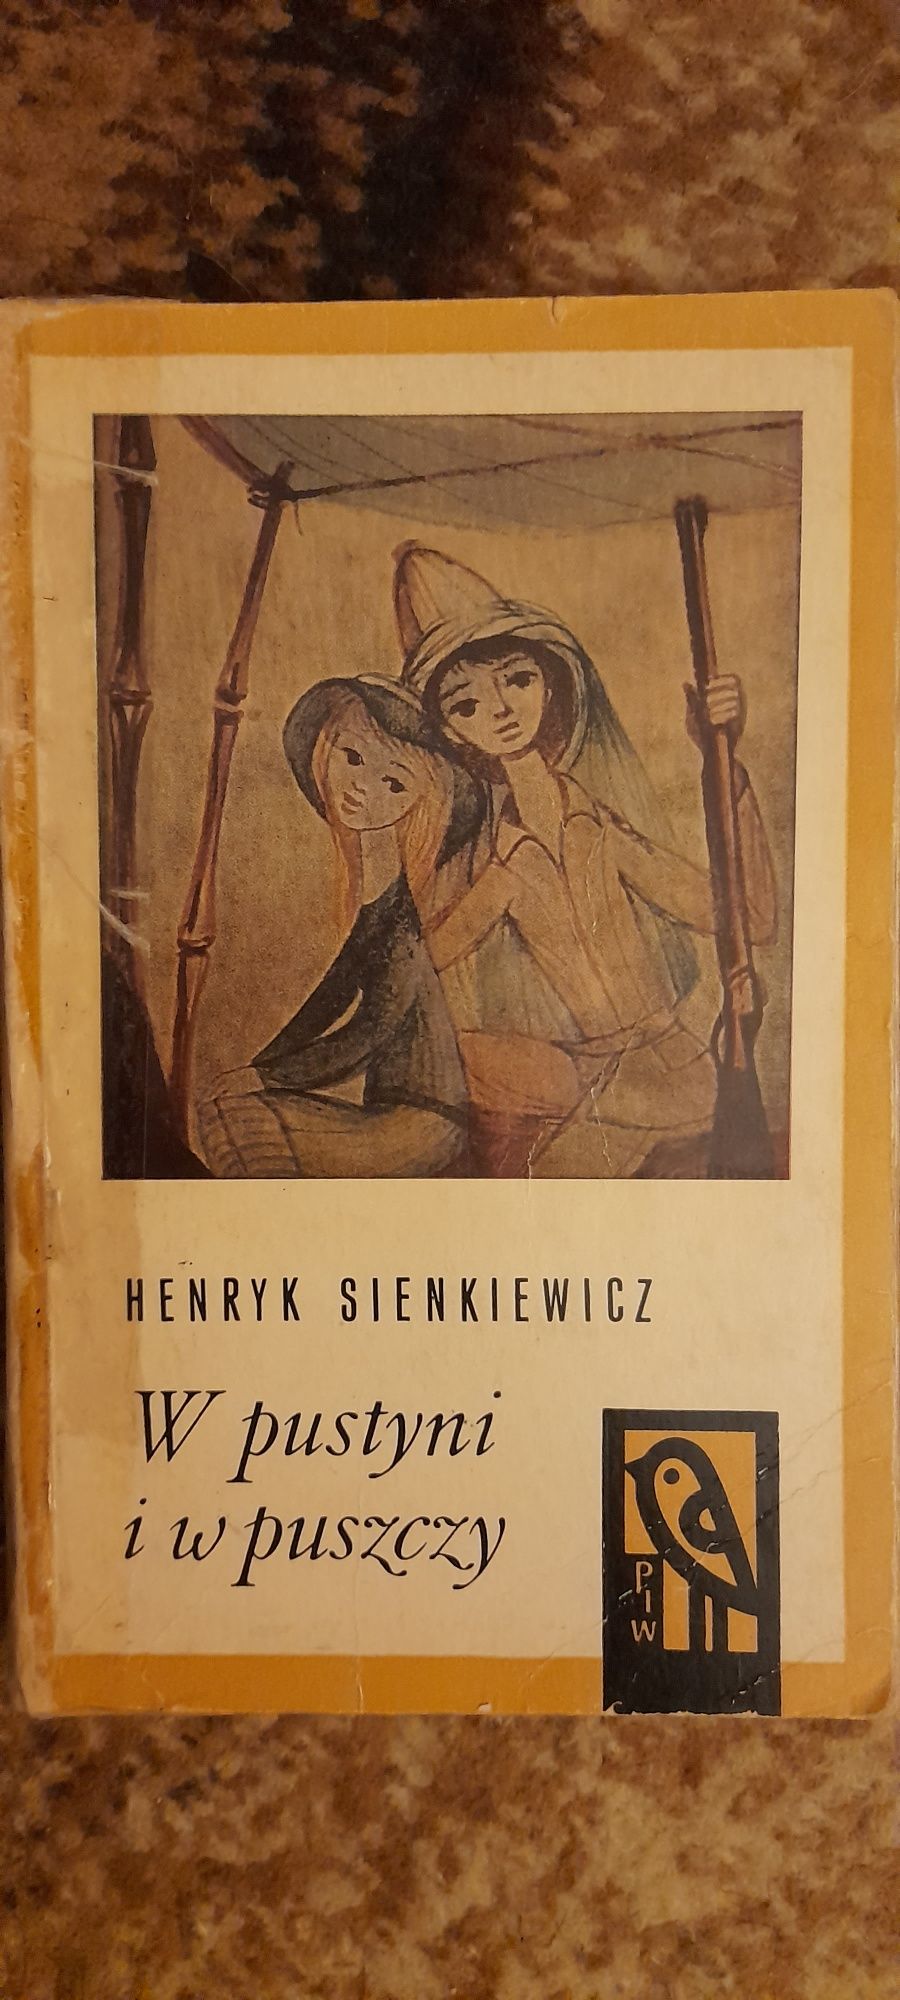 W pustyni I w puszczy - Henryk Sienkiewicz wyd XXVI 1968r.